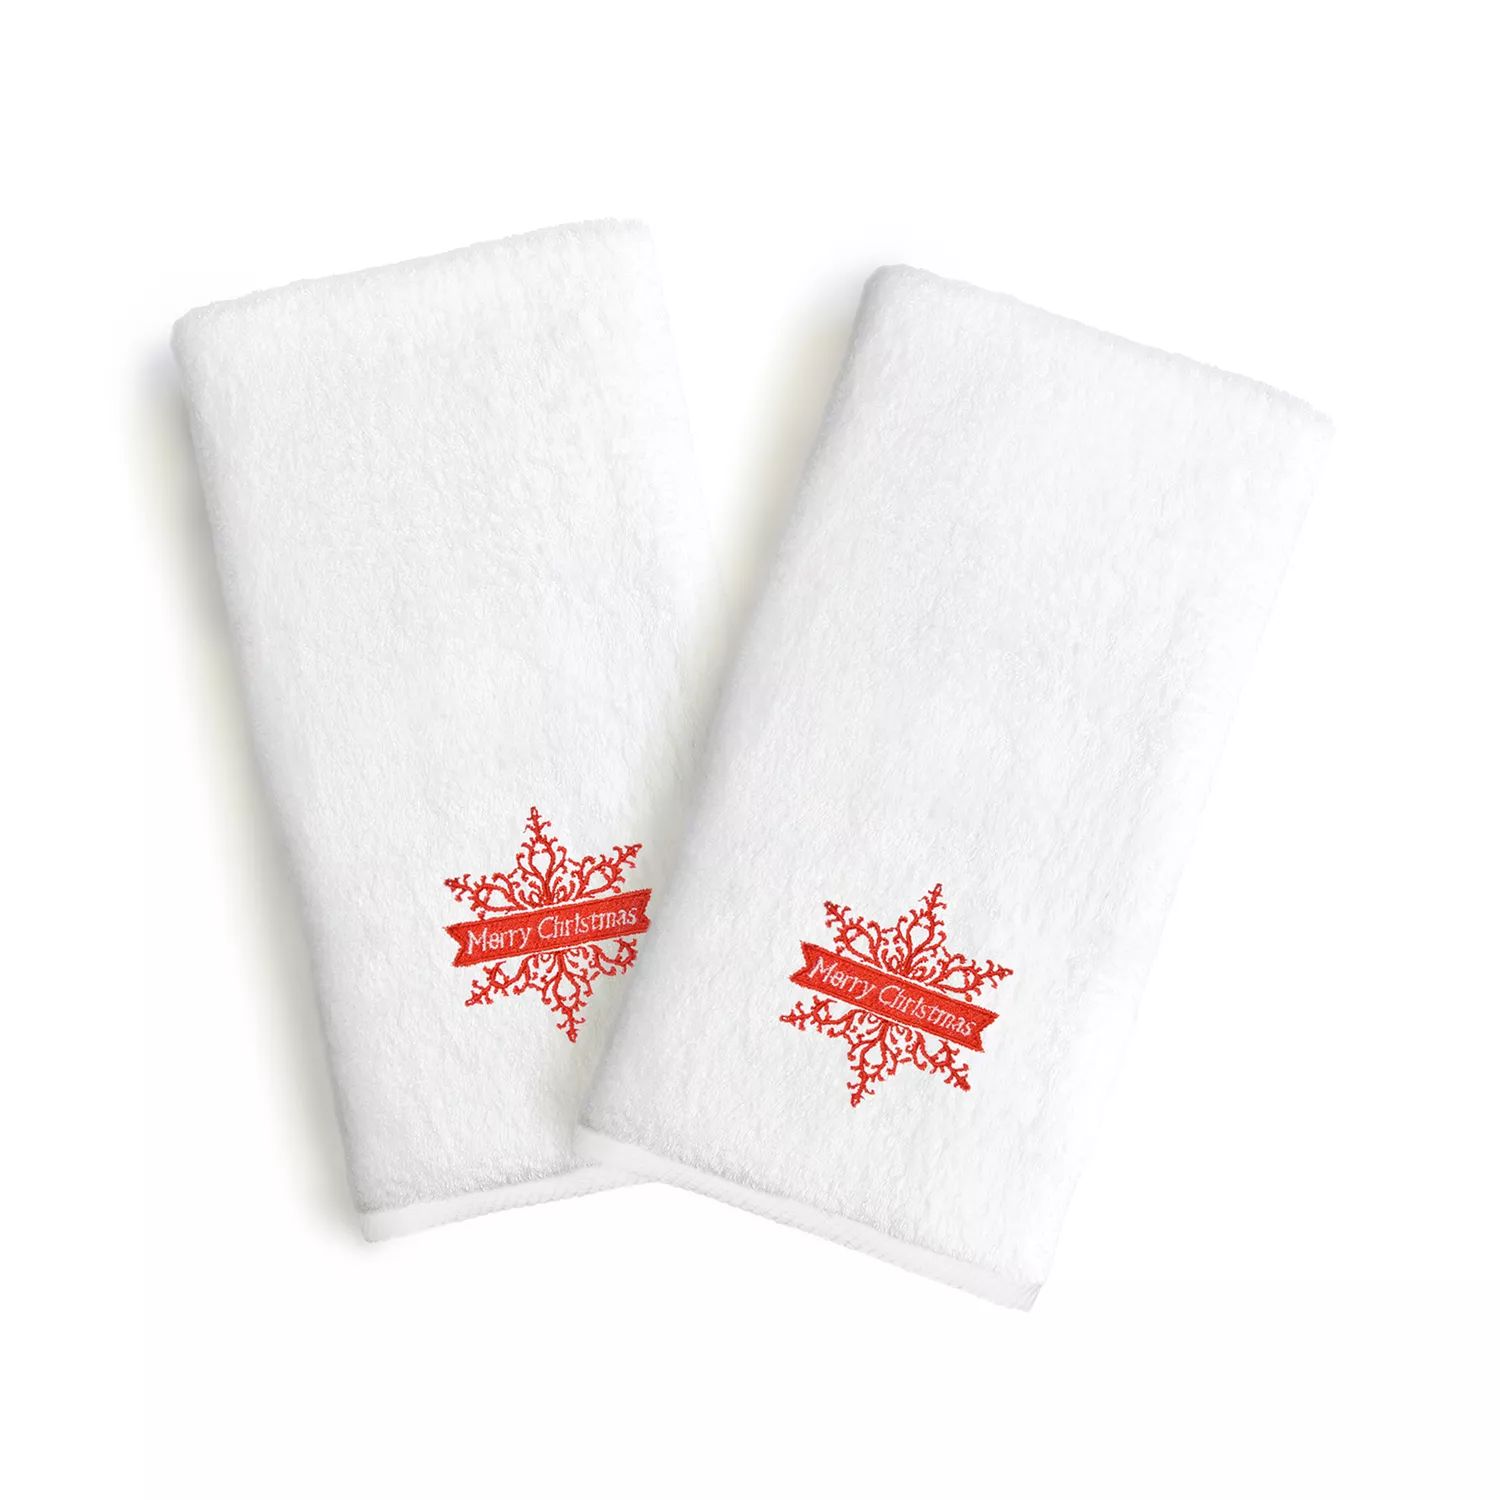 Linum Текстиль для дома Снежинка Праздничная вышивка Роскошные полотенца для рук в упаковке из 2 штук